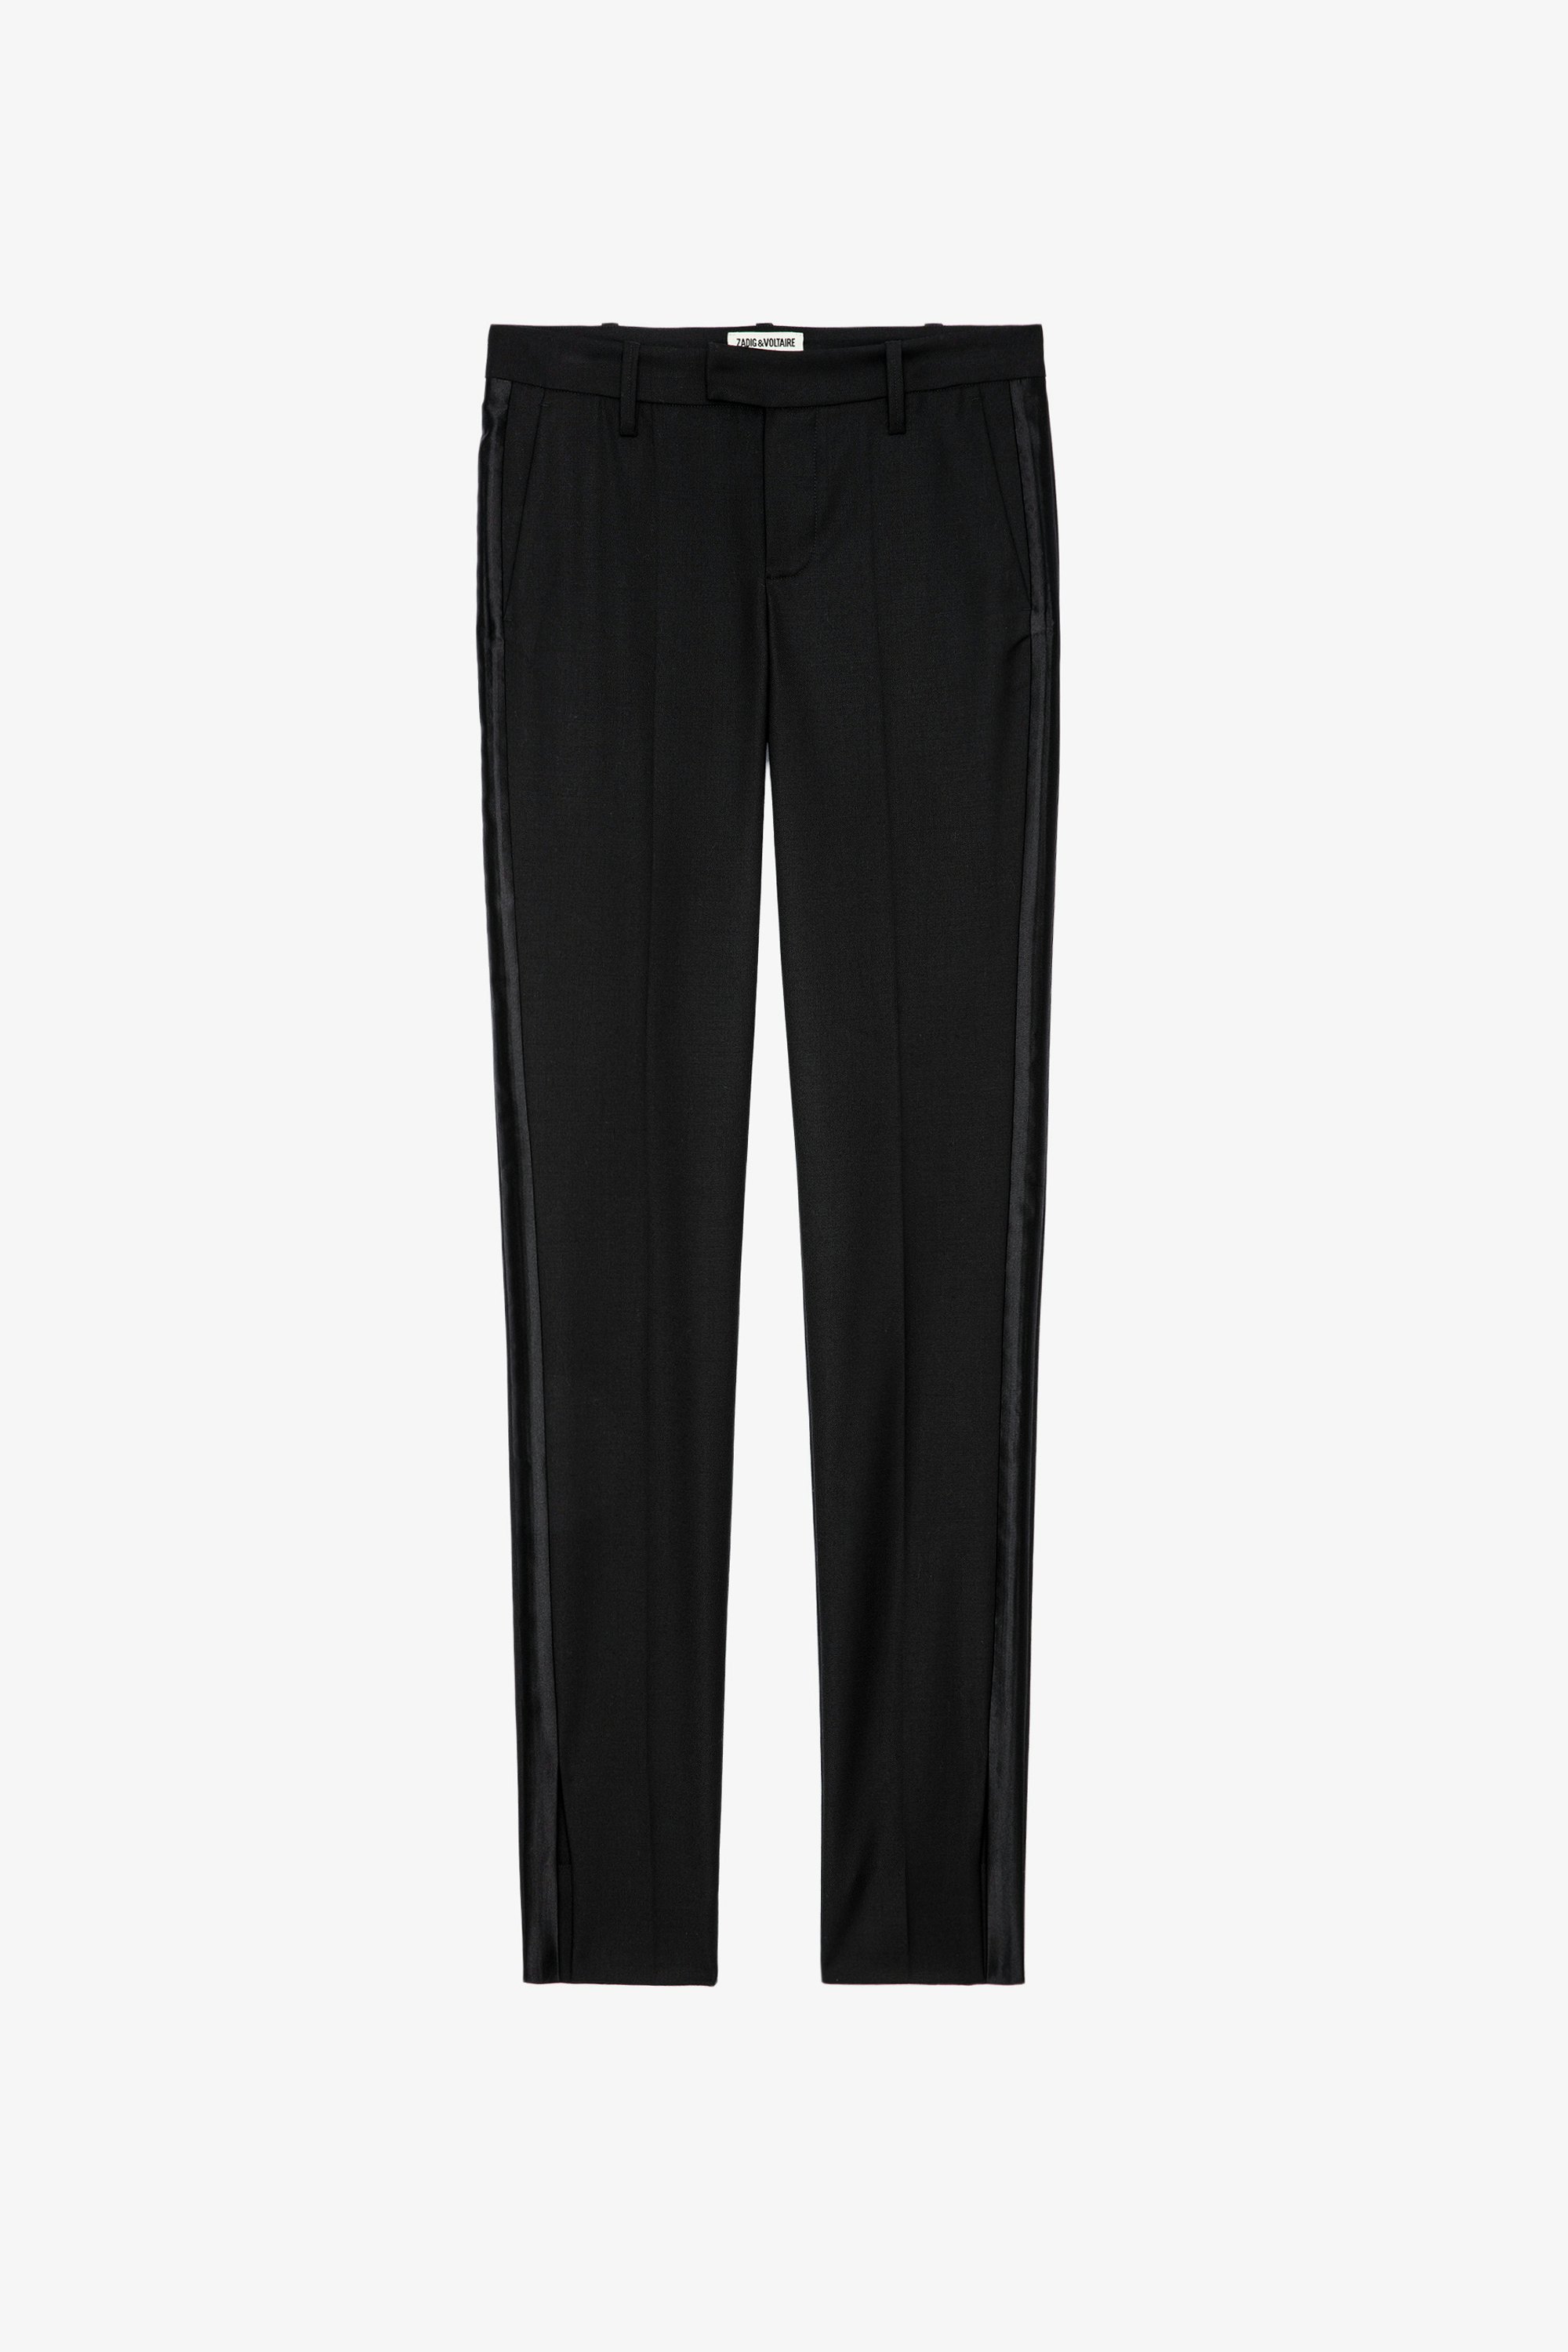 Prune Trousers - Women’s black suit trousers with split hem